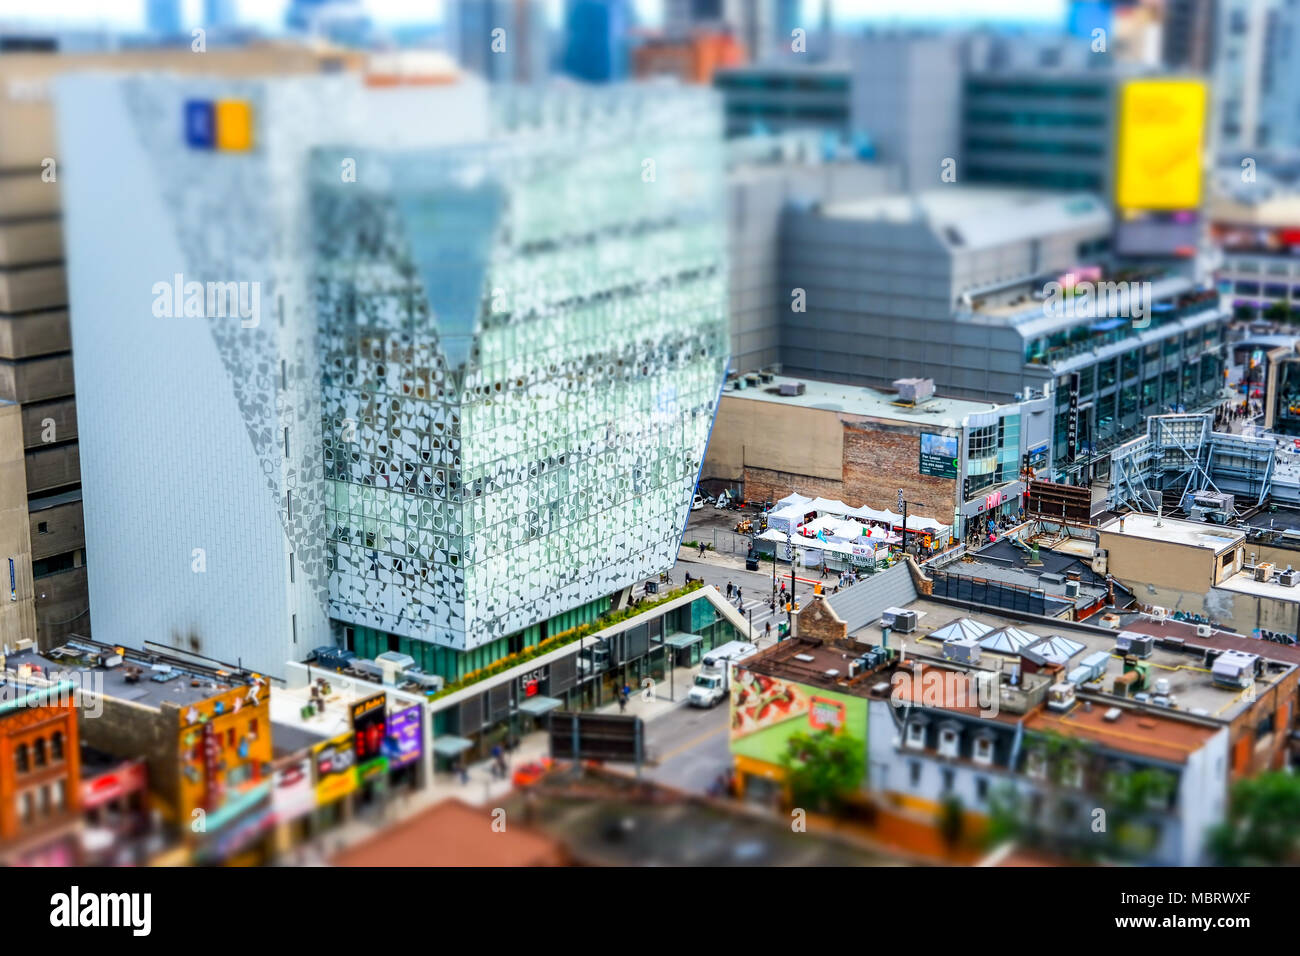 Interessant, diorama Wirkung, die Miniatur Details zum Stadtzentrum von Toronto, die Straßen und die moderne Universität Gebäude im Hintergrund. Stockfoto